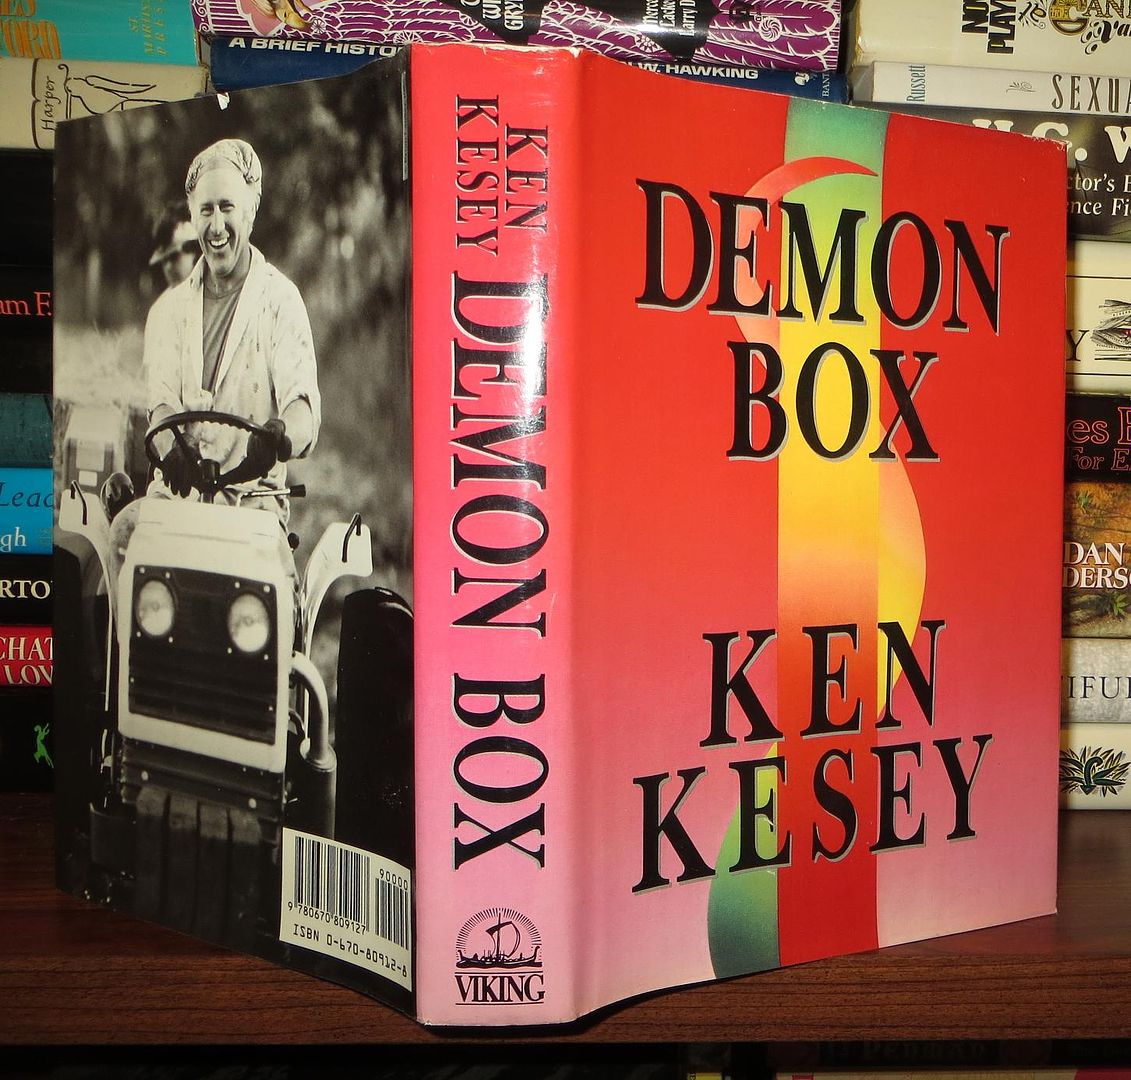 KESEY, KEN - Demon Box